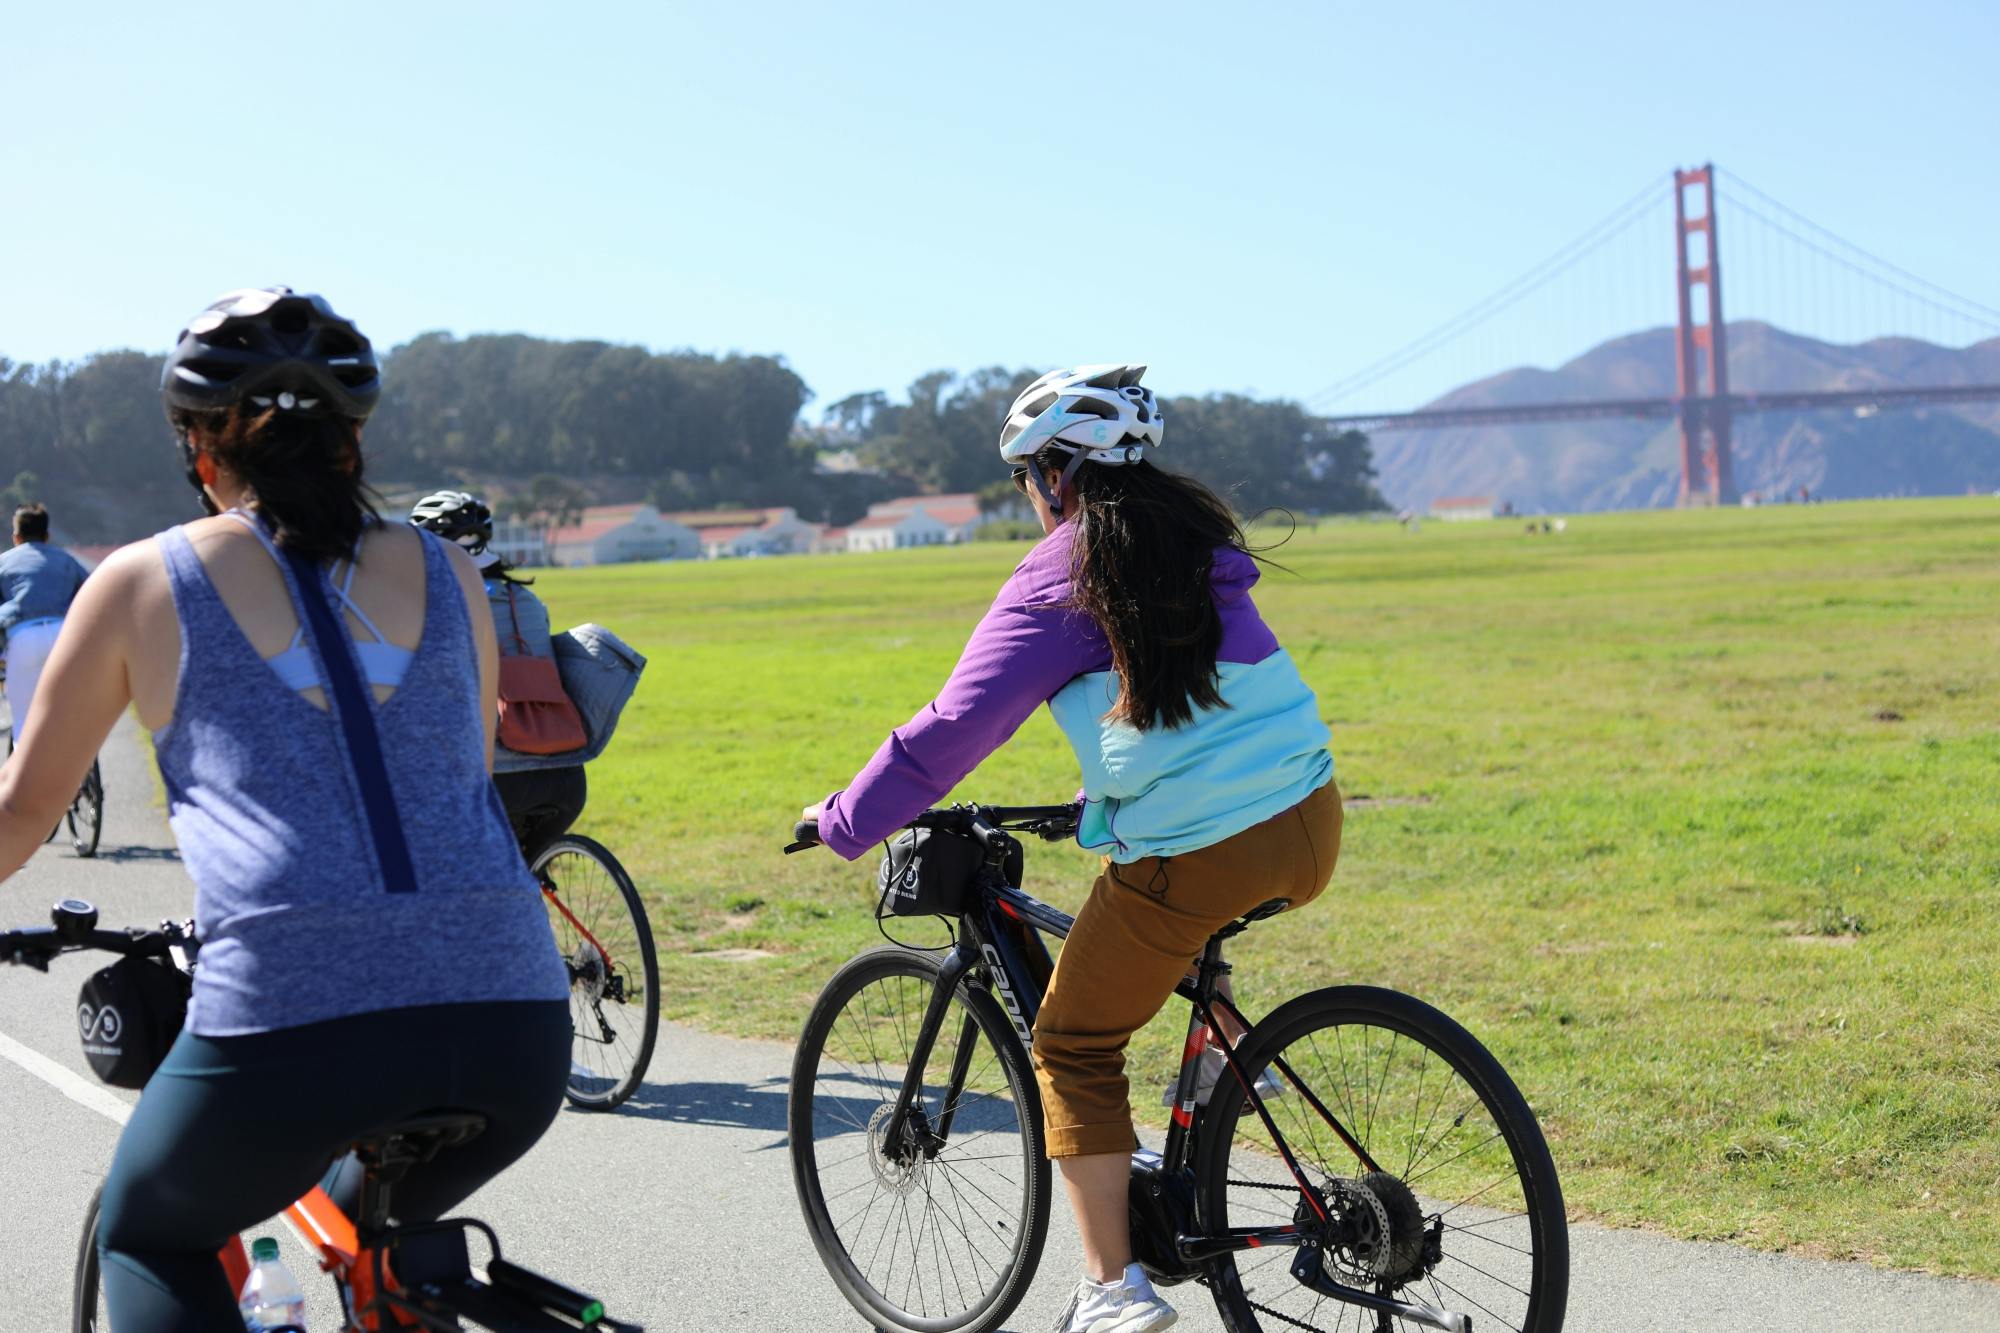 Aspectos destacados de la visita guiada en bicicleta al parque Golden Gate